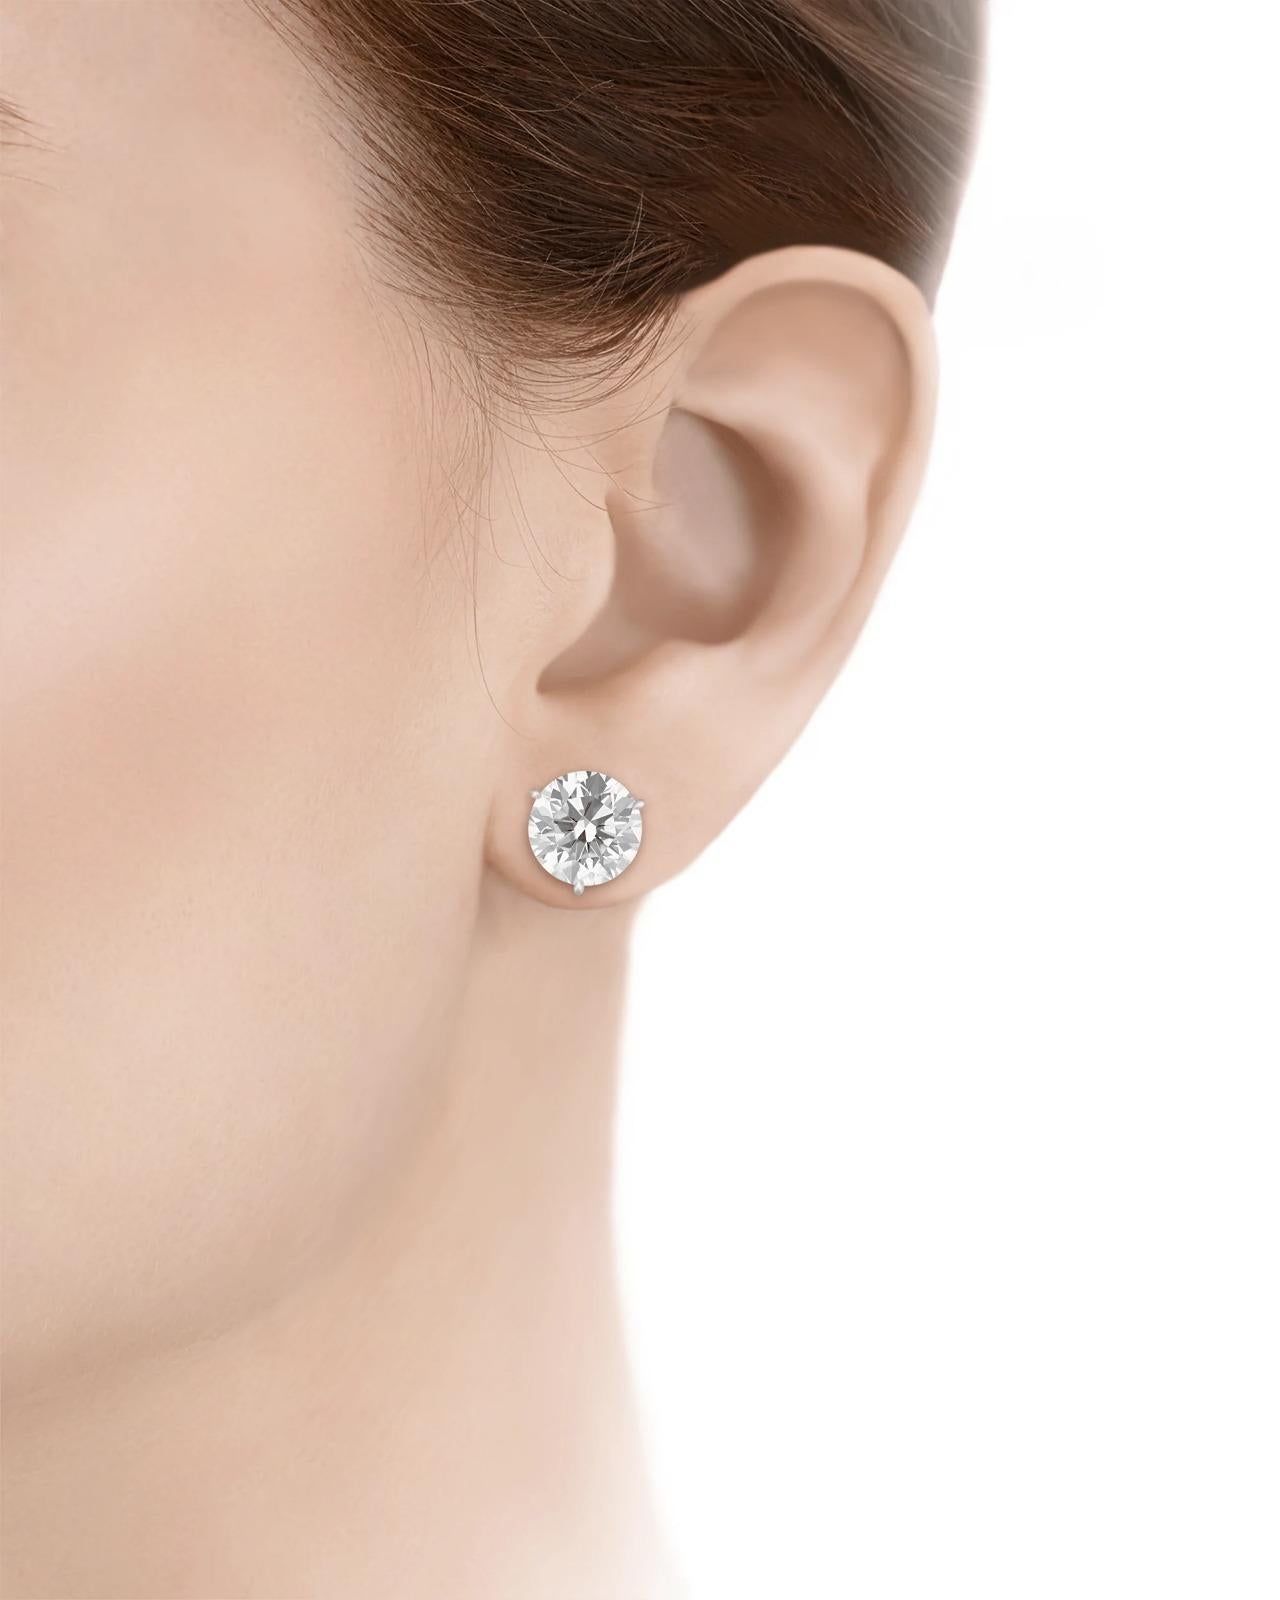 how to clean stud earrings